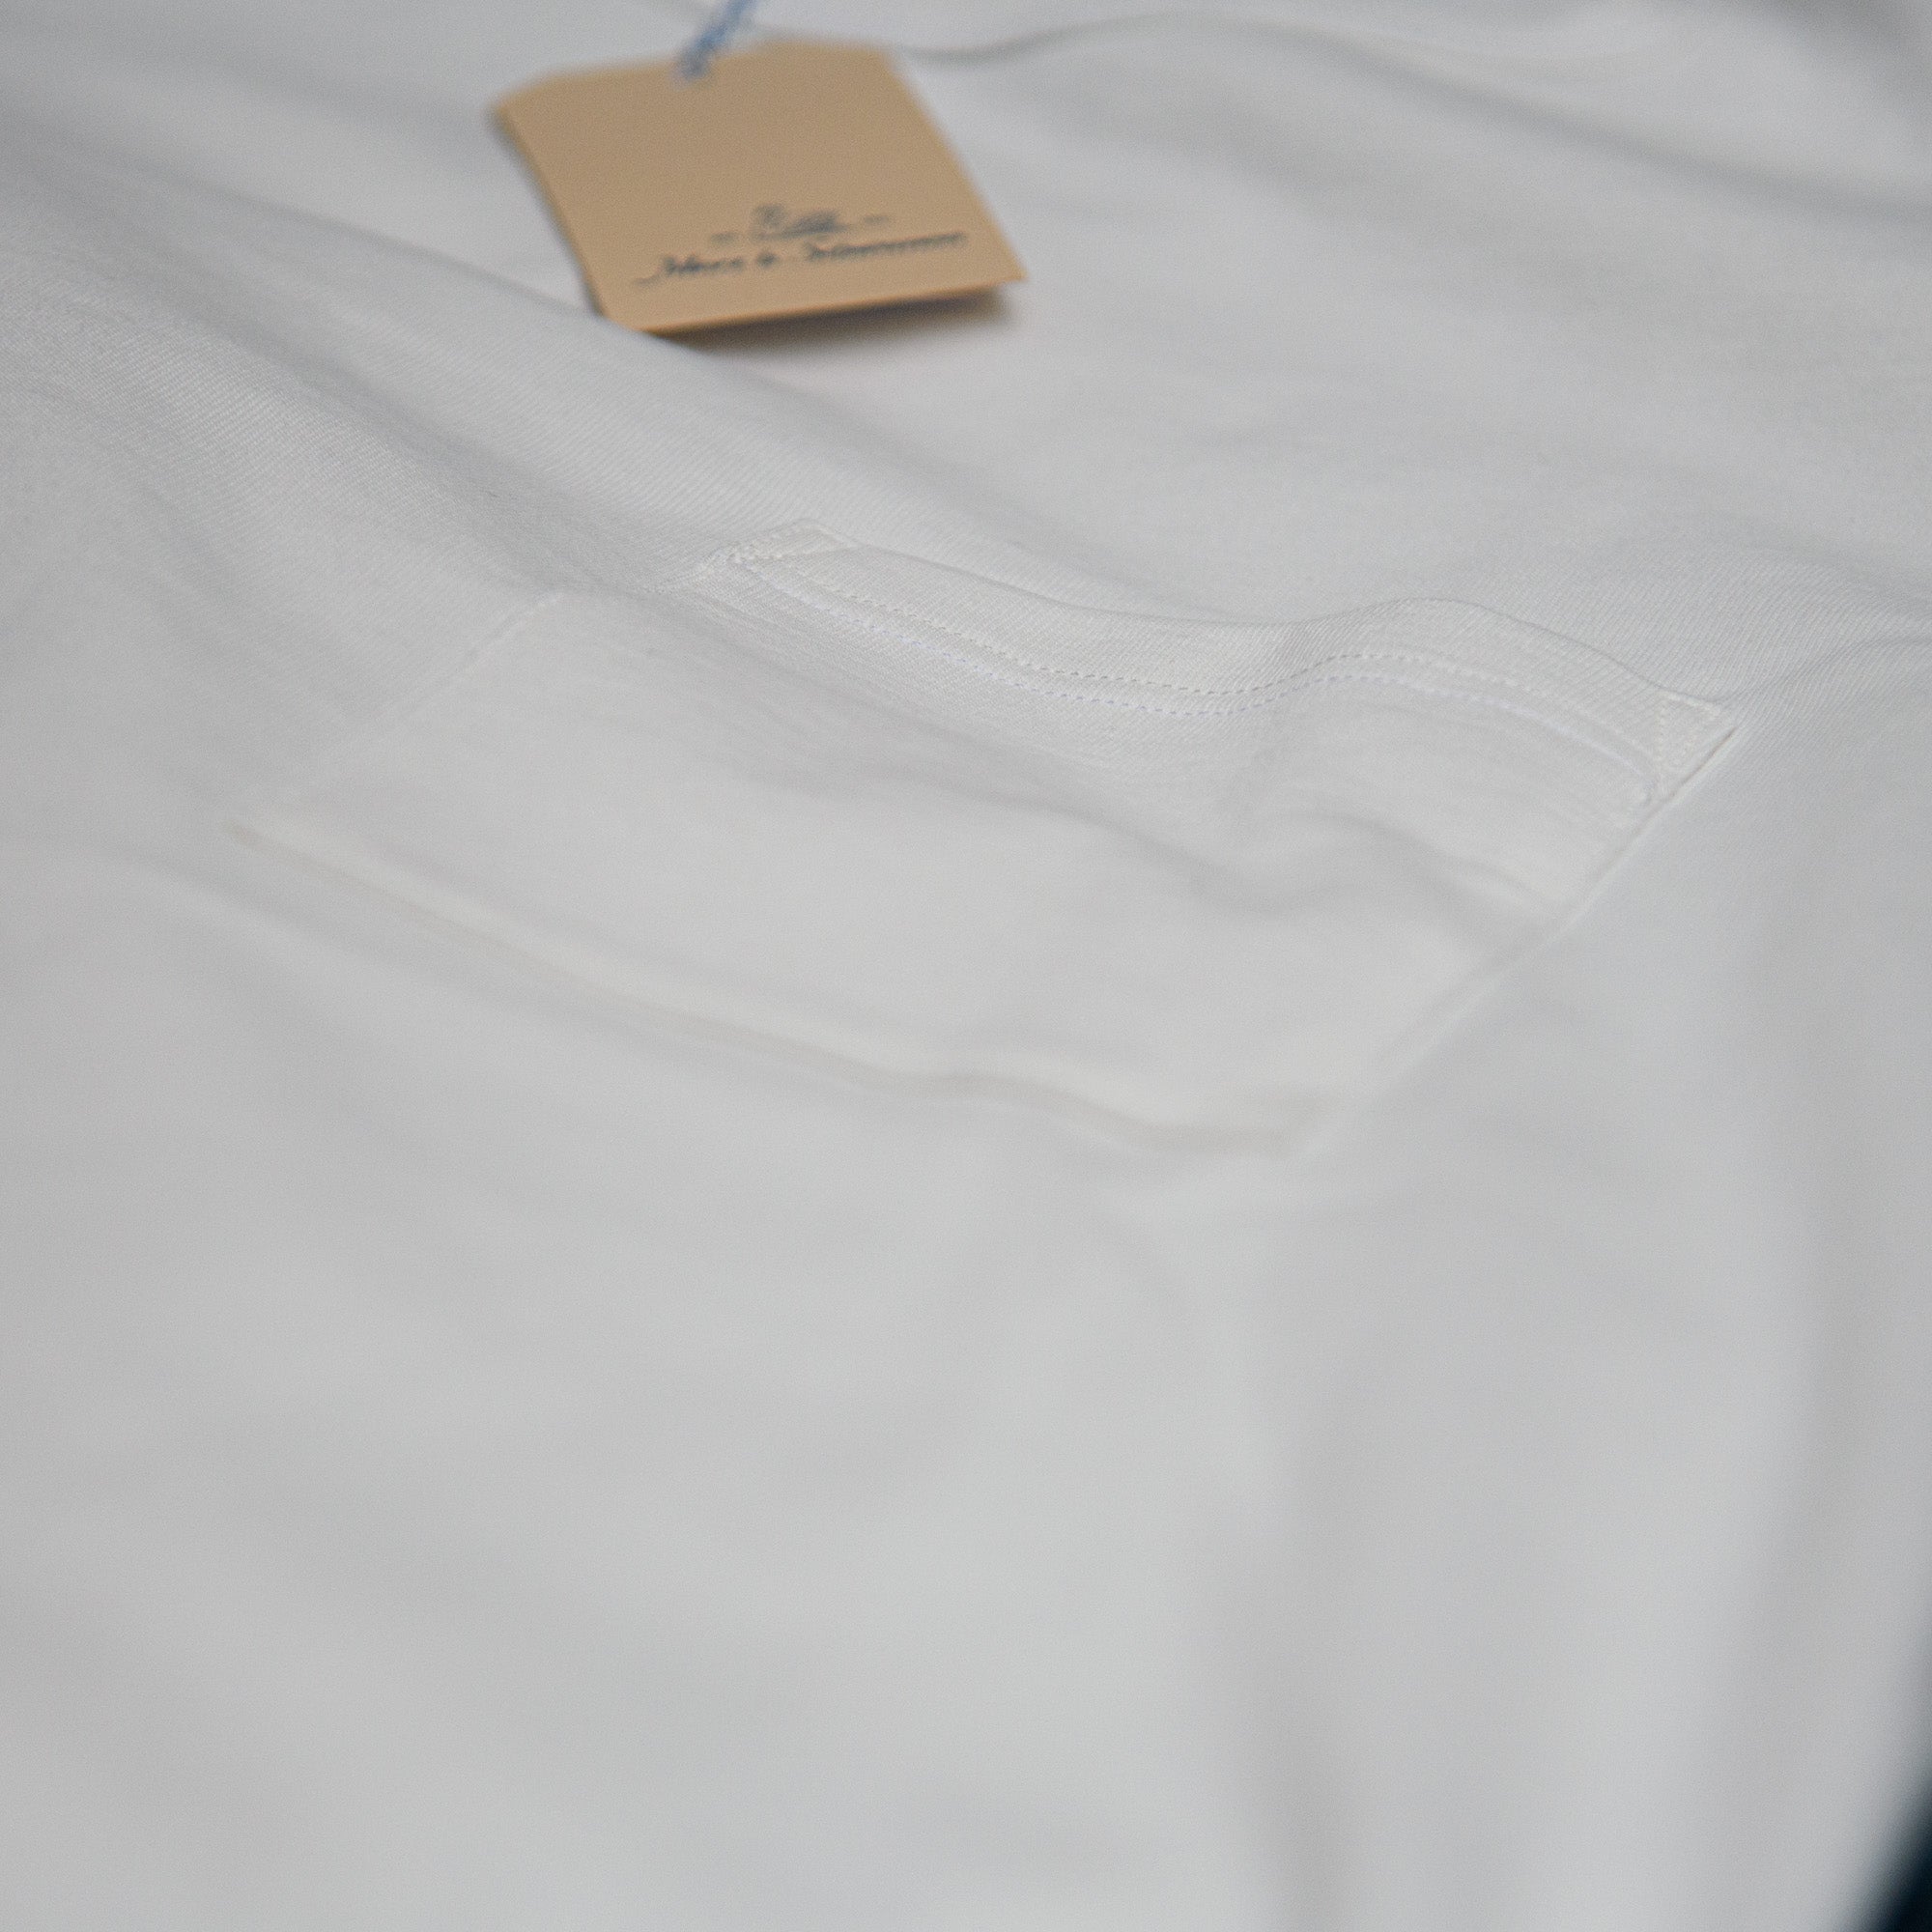 Merz b Schwanen Limited (Europe) Pocket – White / Edition Exclusive Store 215 T-Shirt